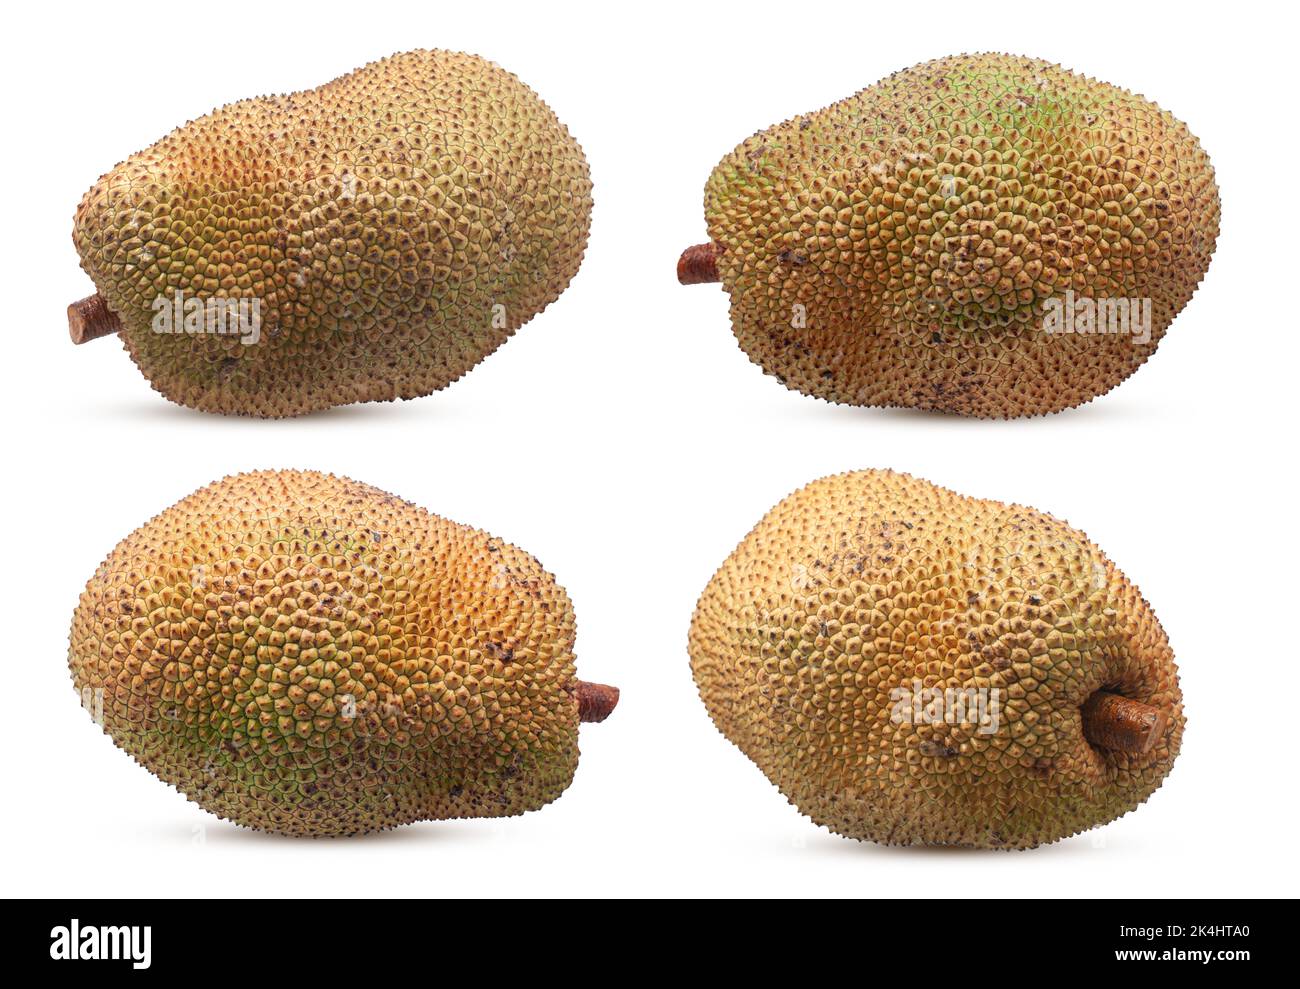 jackfruit isolated on white background. Stock Photo